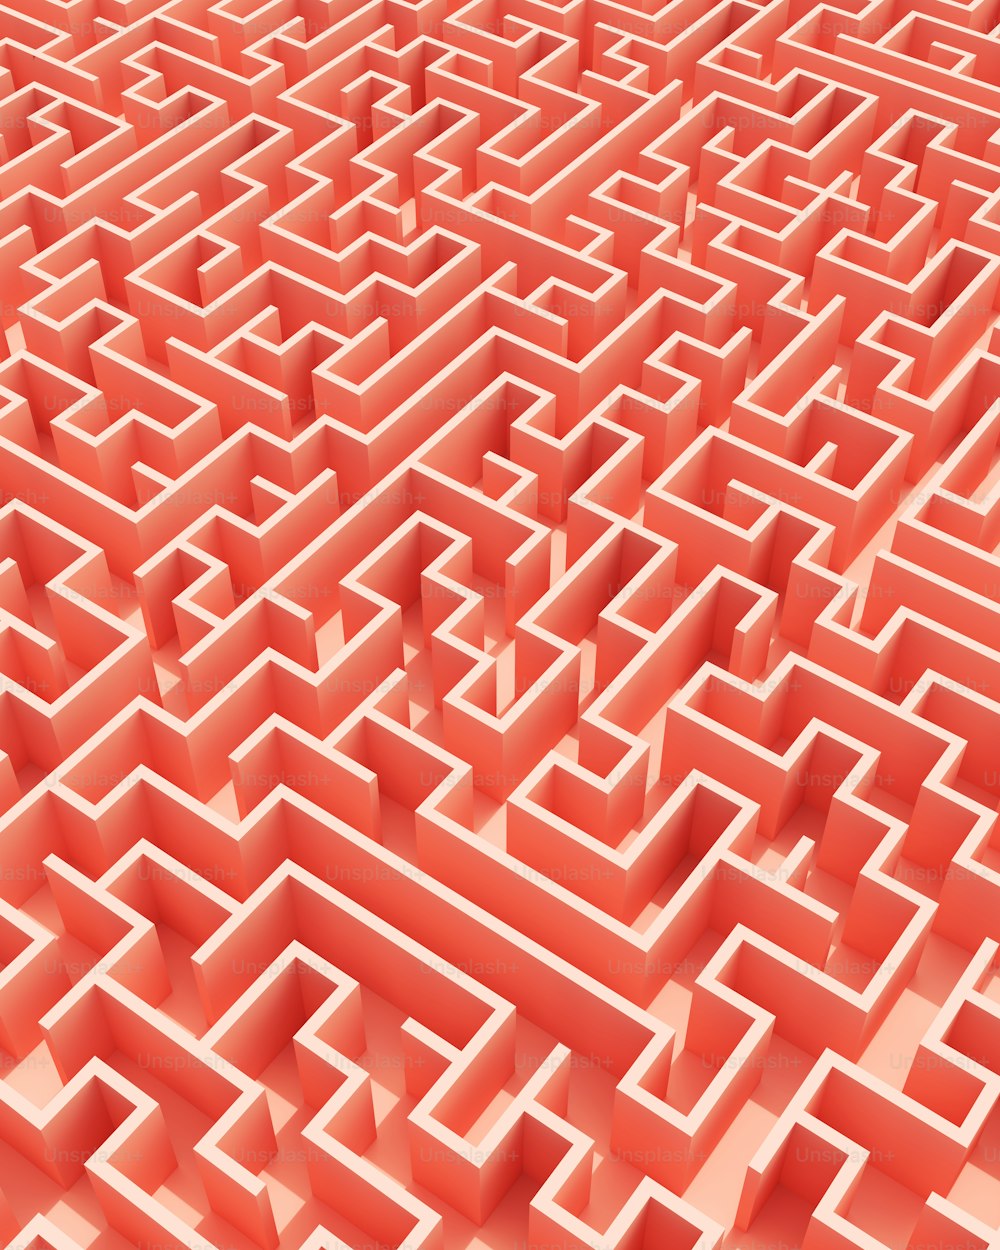 ein sehr großes Labyrinth mit vielen kleineren darin